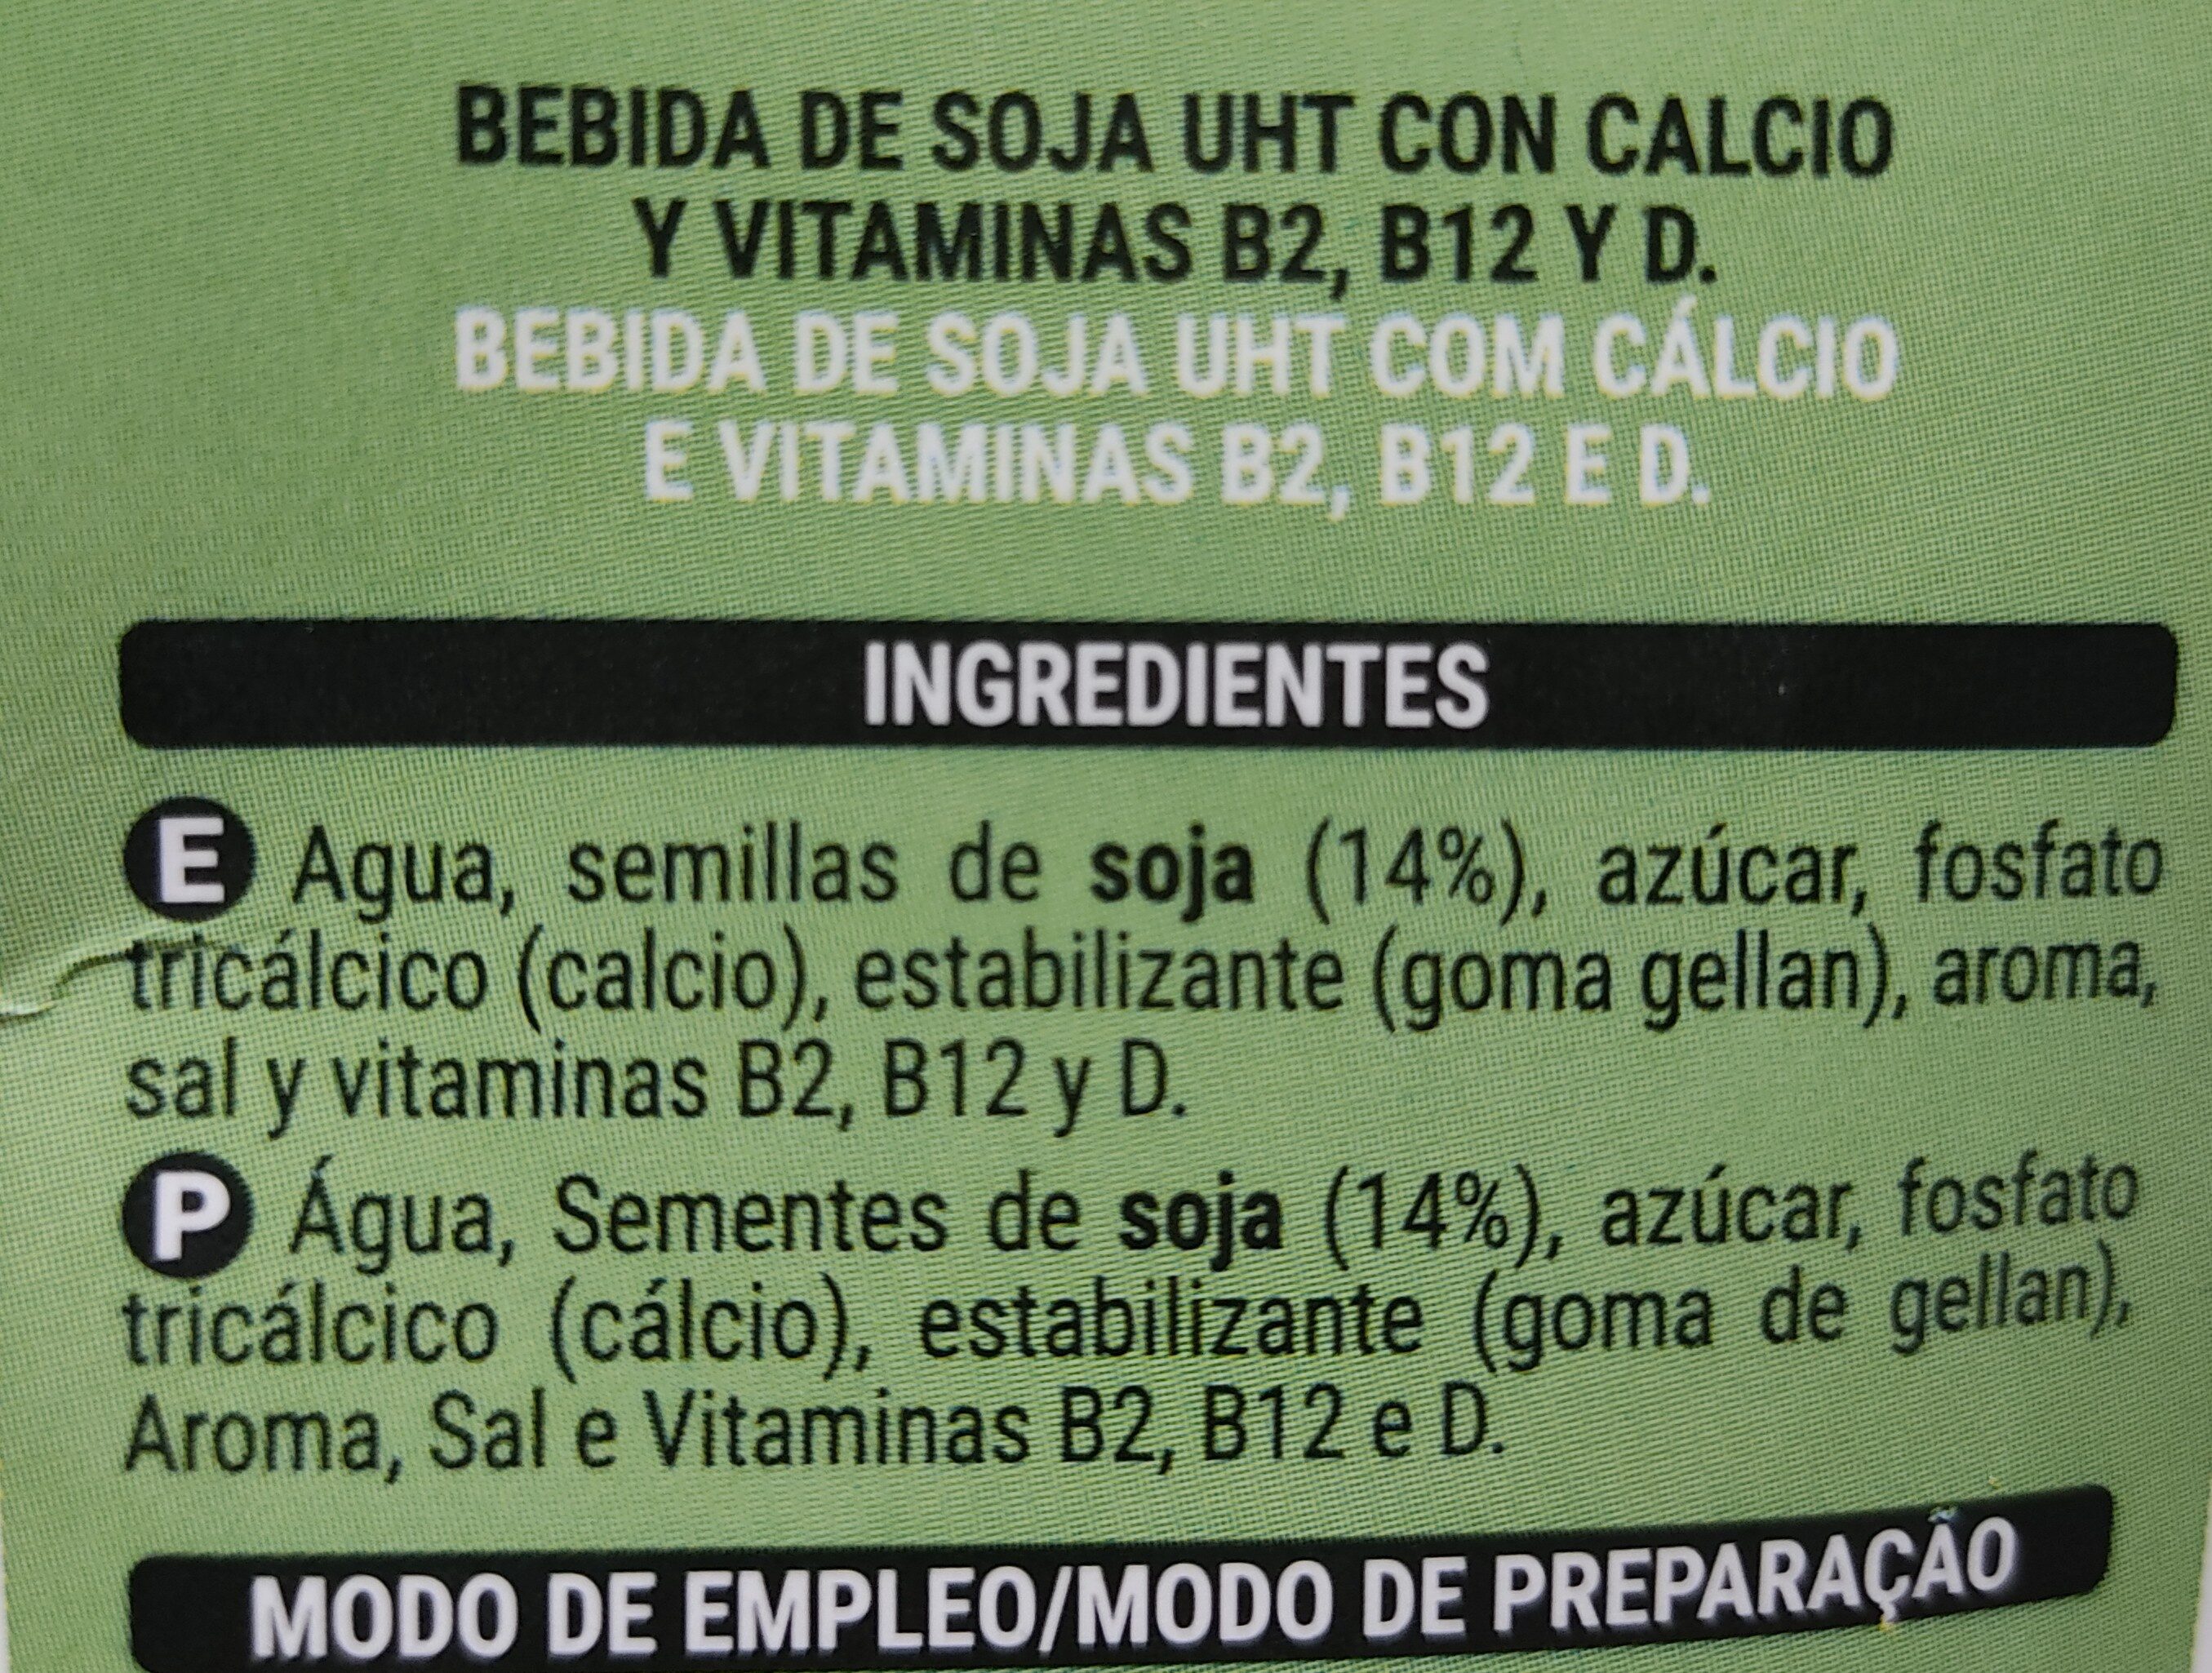 Bebida de Soja con Calcio - Ingredients - es